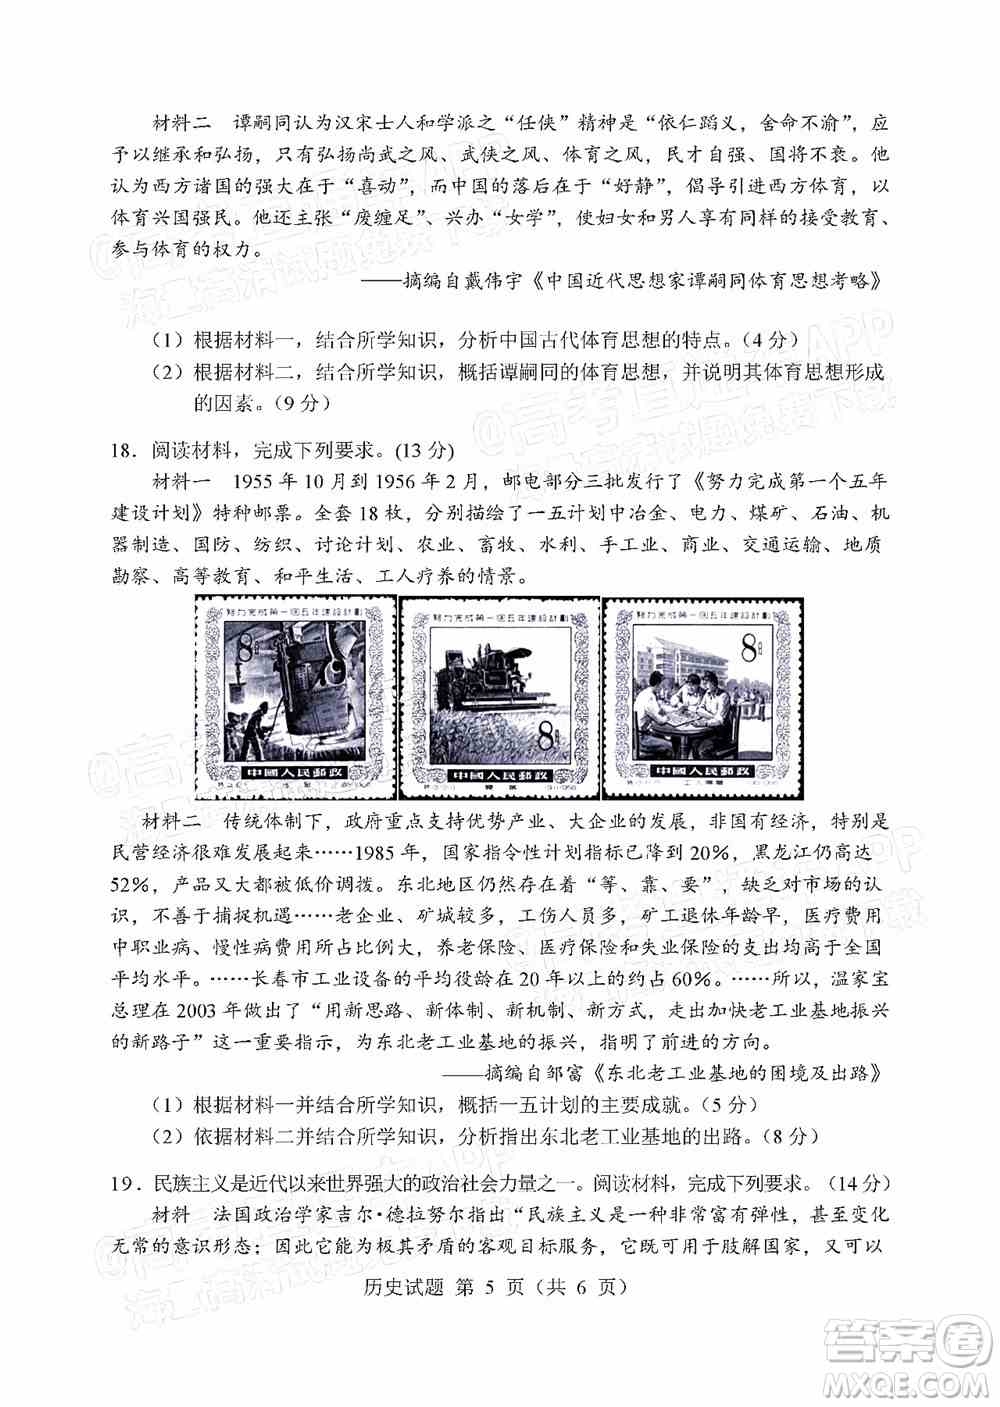 辽宁省部分重点中学协作体2022年模拟考试高三历史试题及答案